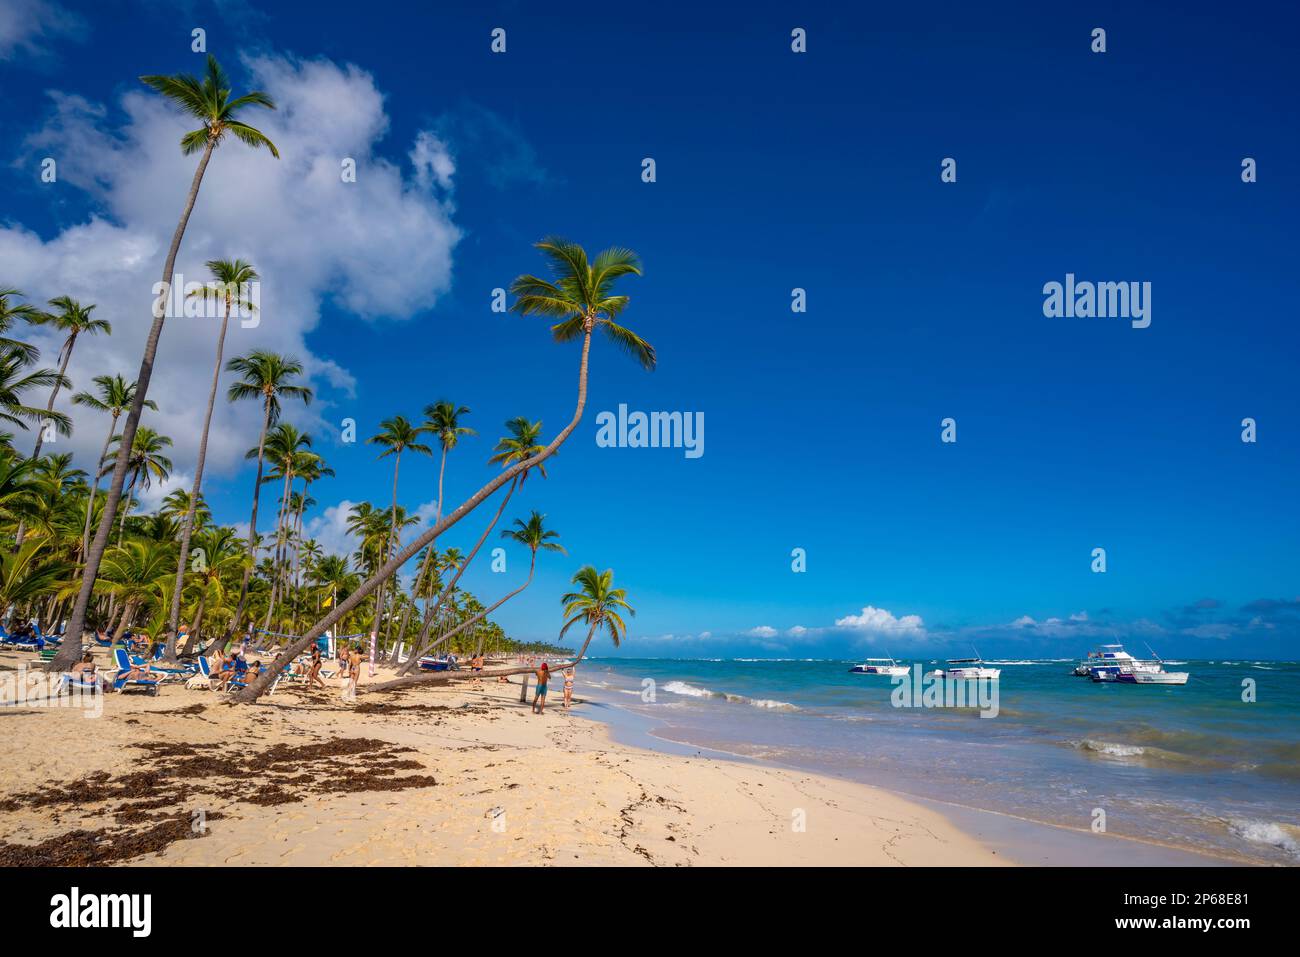 Vista del mare, della spiaggia e delle palme in una giornata di sole, Bavaro Beach, Punta Cana, Repubblica Dominicana, Indie Occidentali, Caraibi, America Centrale Foto Stock